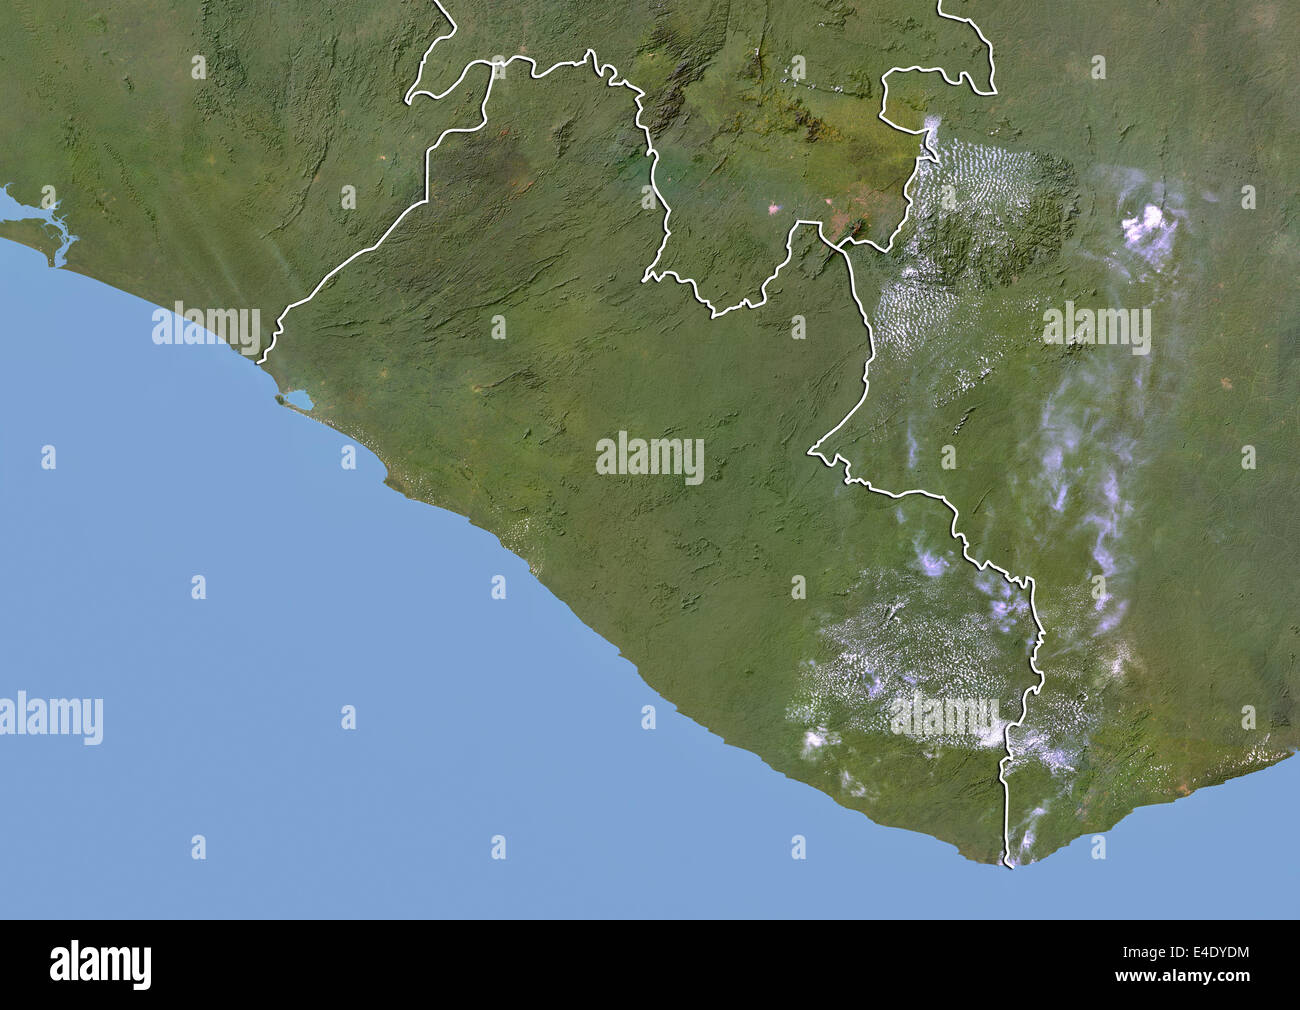 Le Libéria, image satellite avec effet de choc, avec bordure Banque D'Images